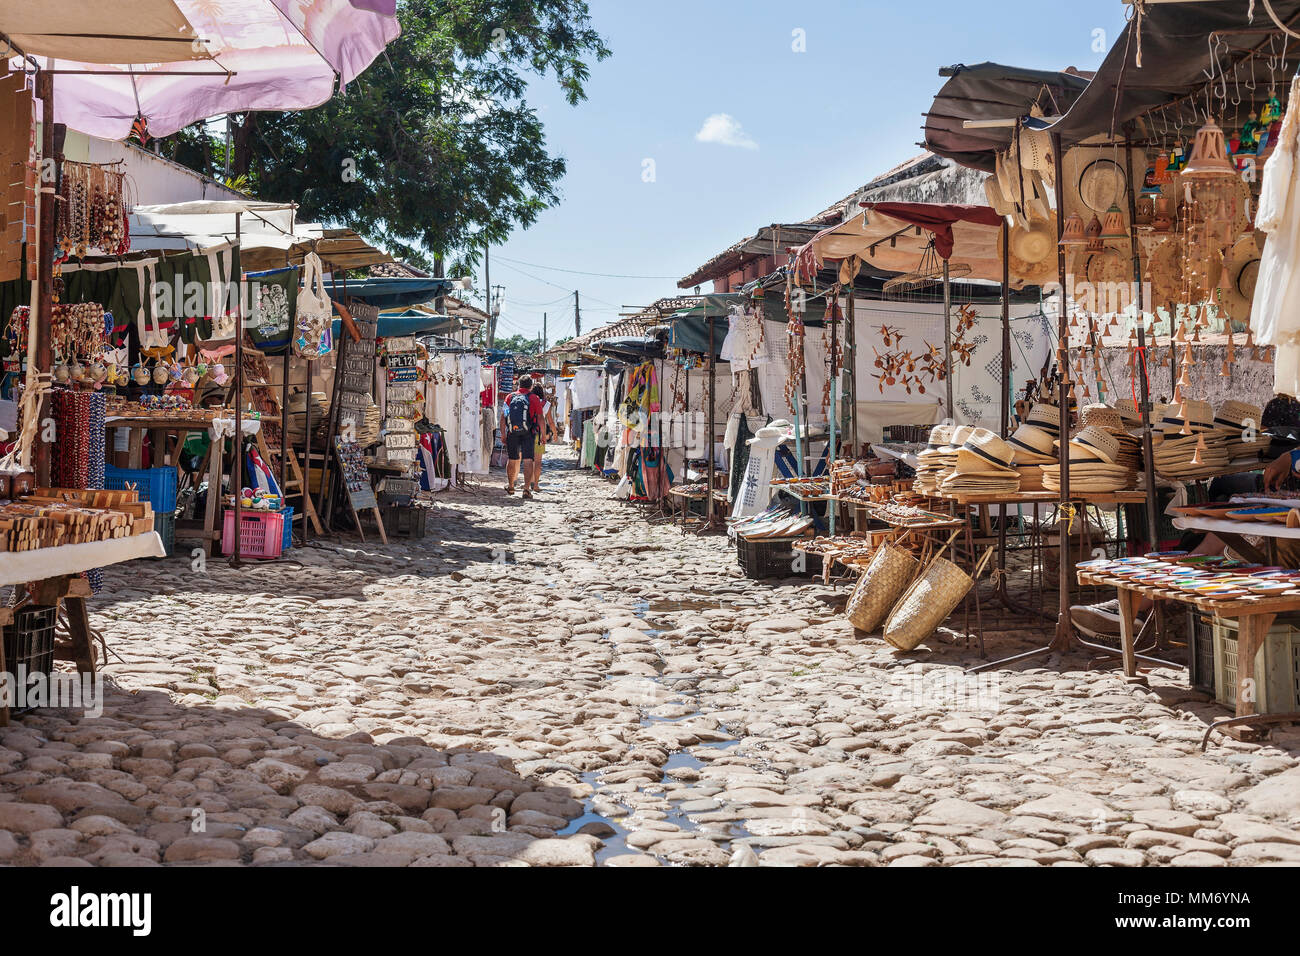 Les étals du marché de la vieille ville de Trinidad, Cuba Banque D'Images